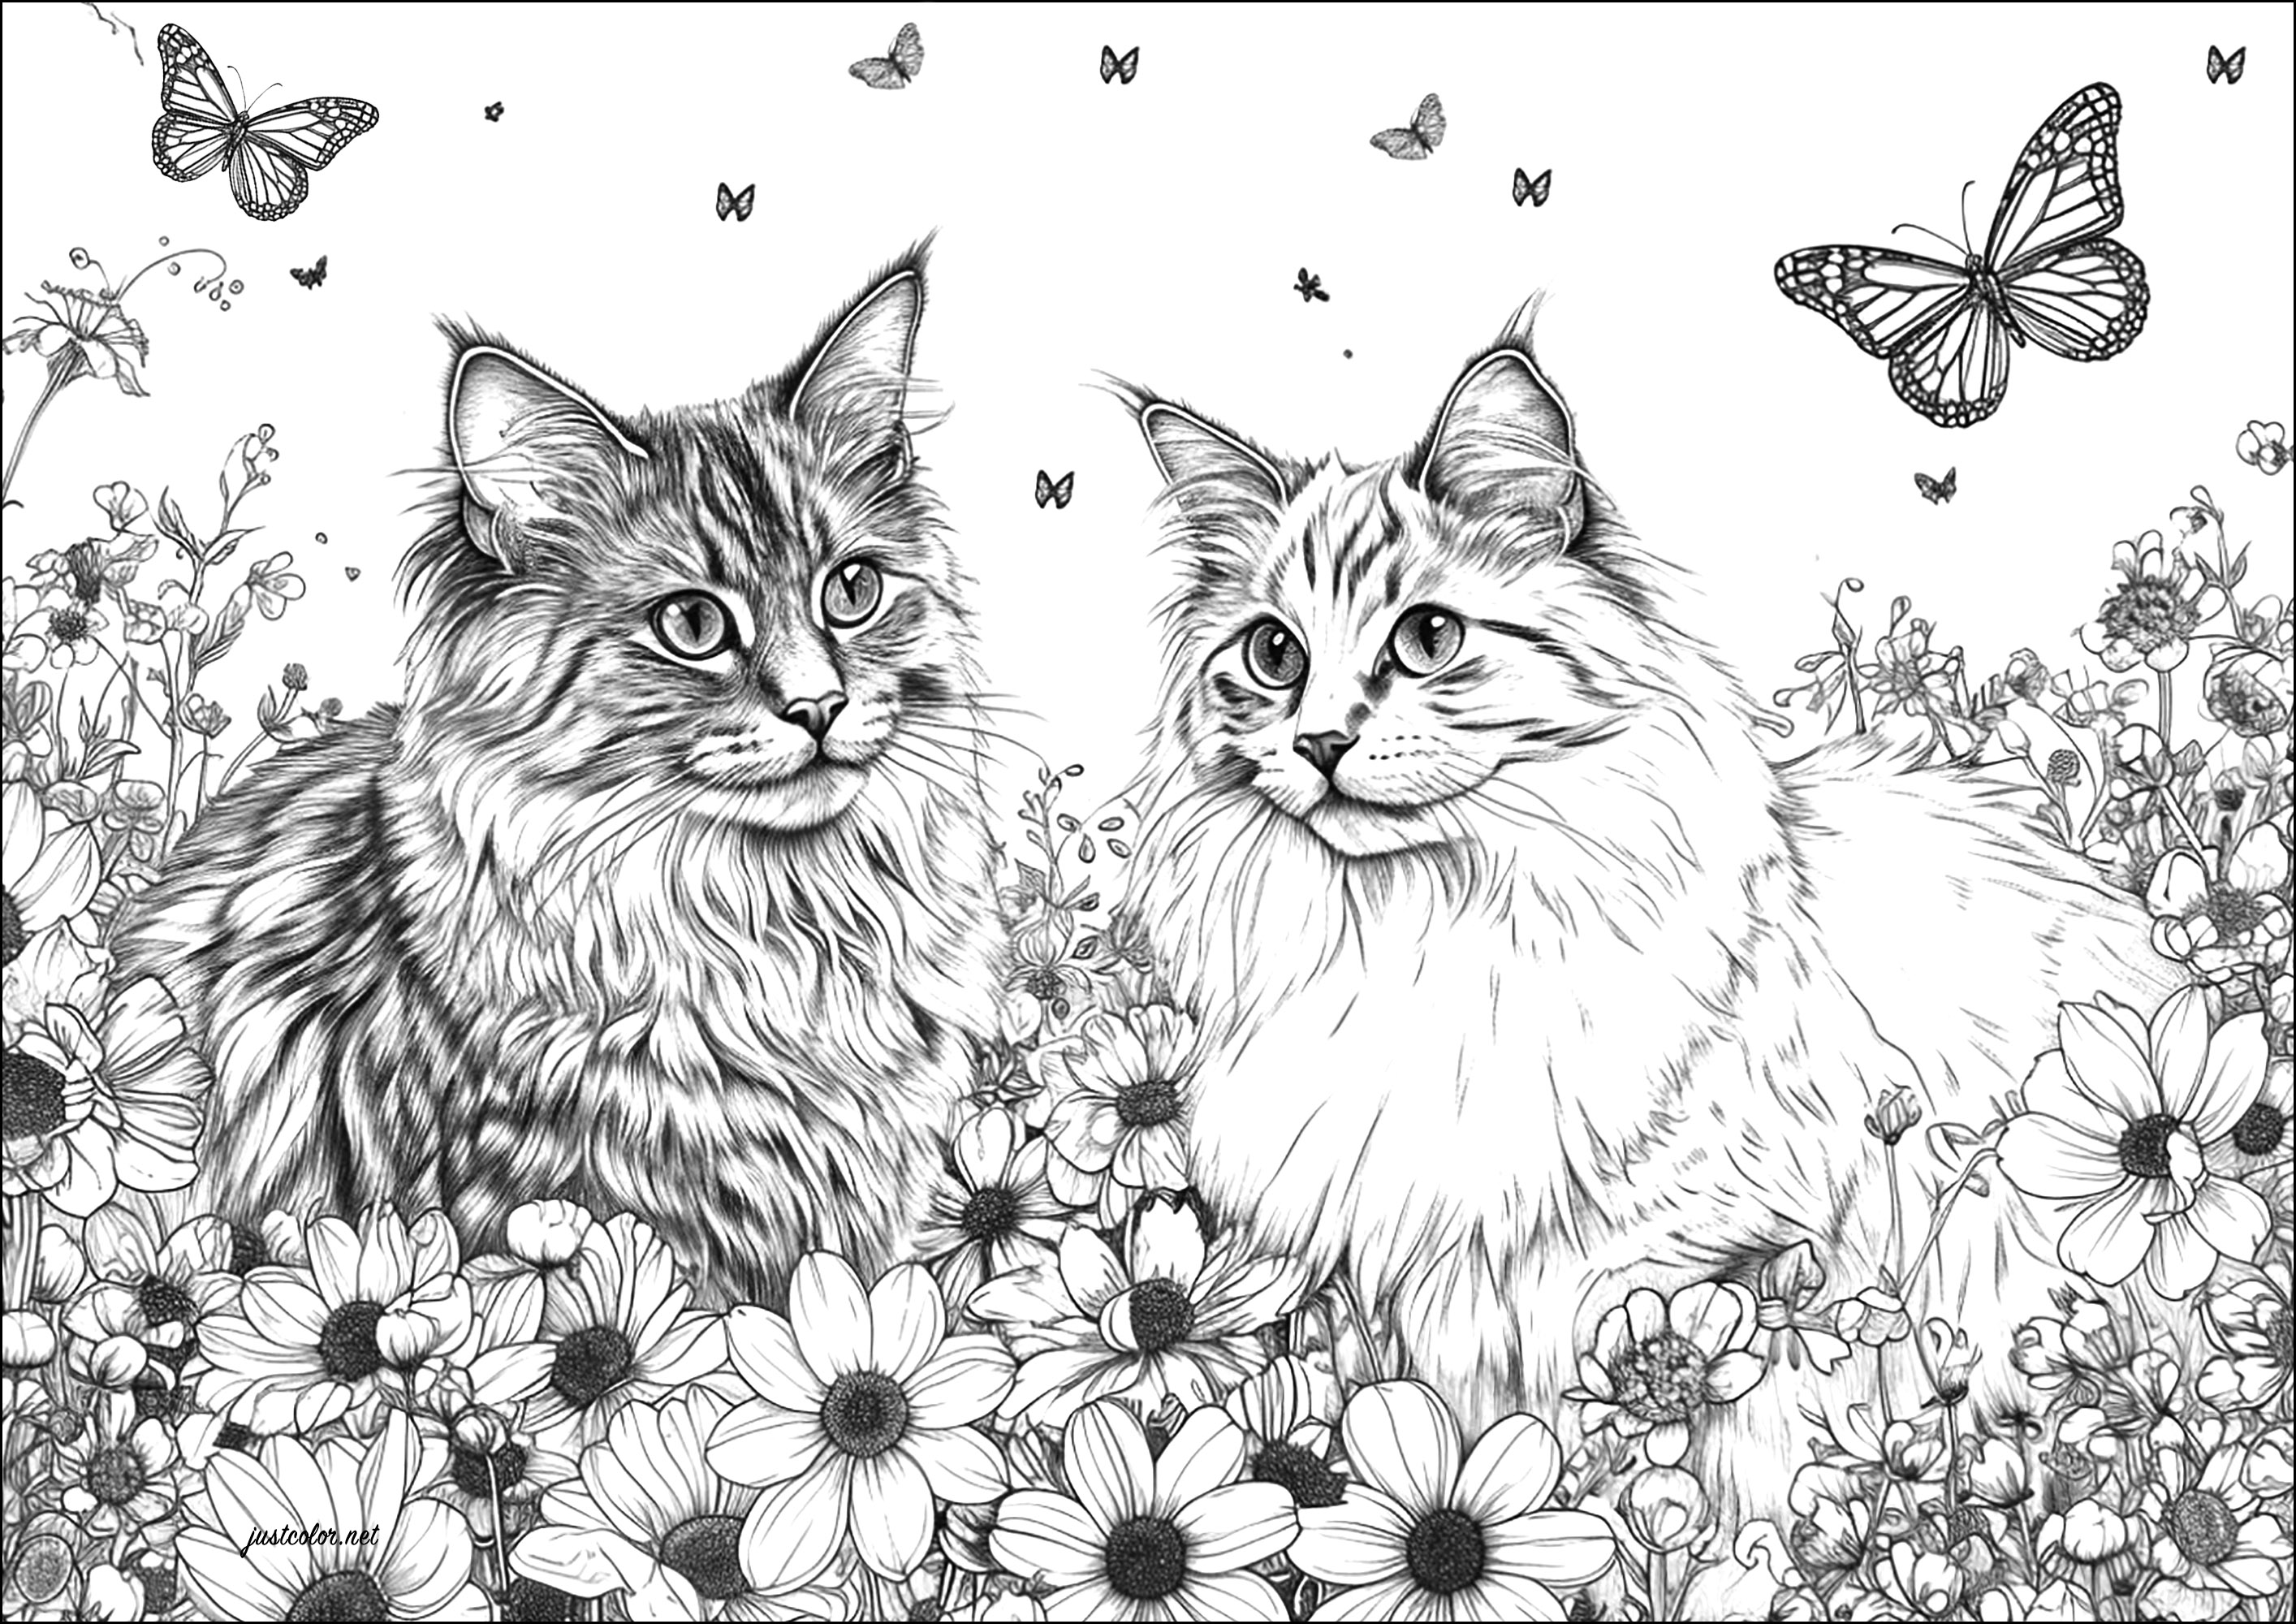 Dois gatos muito realistas com flores e borboletas. Um desenho muito realista, que exigirá horas de trabalho.